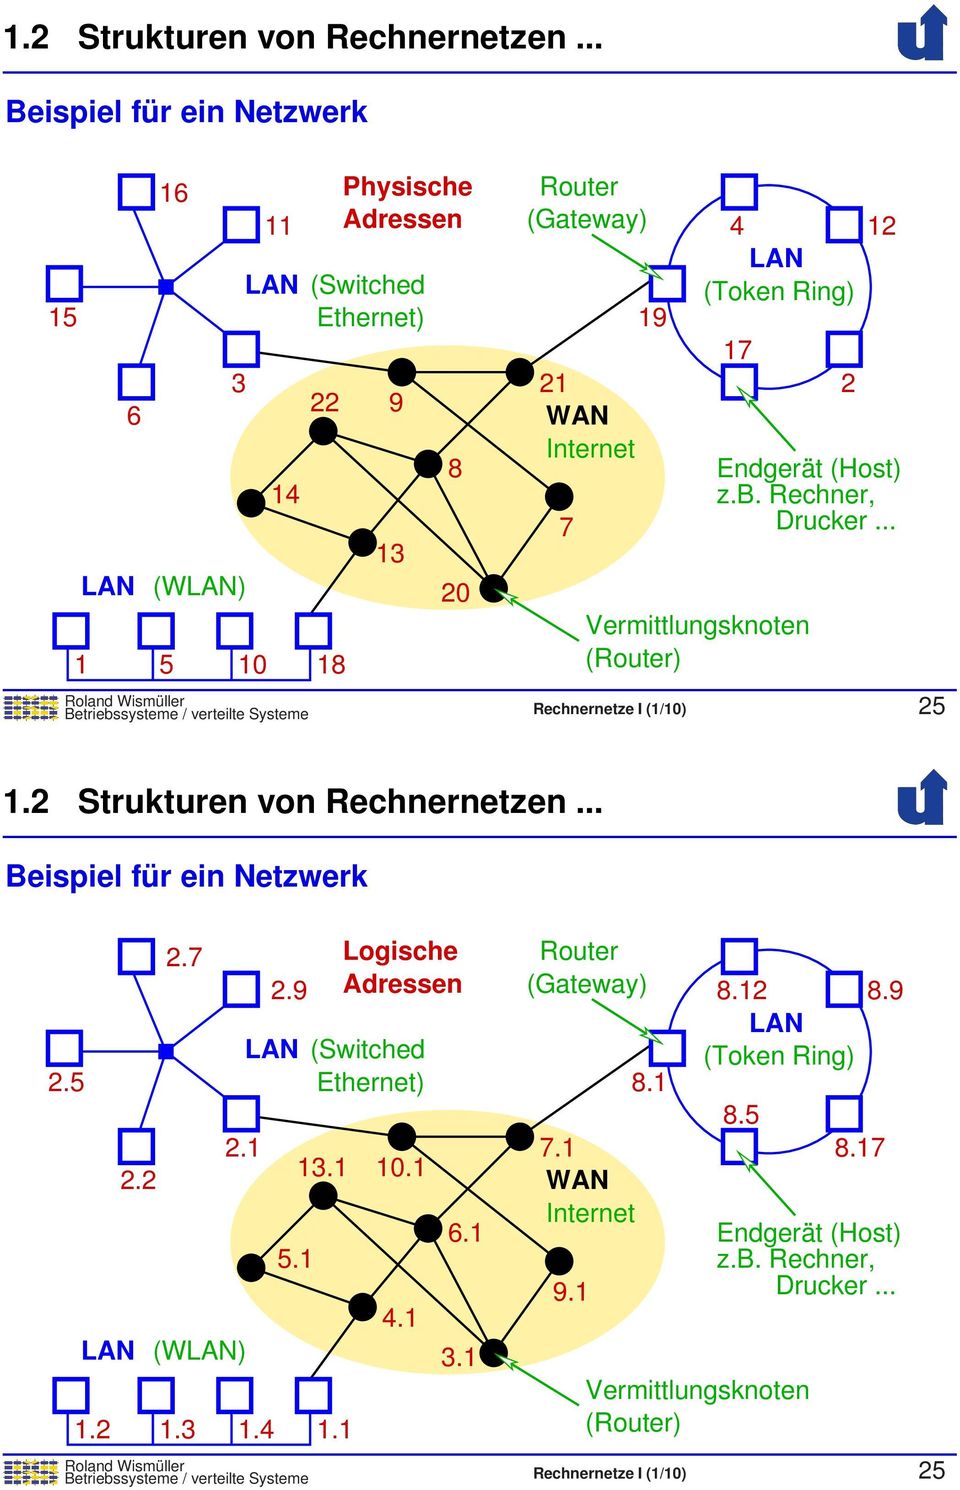 (Host) z.b. Rechner, Drucker... Vermittlungsknoten (Router) Betriebssysteme / verteilte Systeme Rechnernetze I (1/10) 25 7 19 17 2 .. Beispiel für ein Netzwerk 2.5 2.2 2.7 2.1 (W) 1.